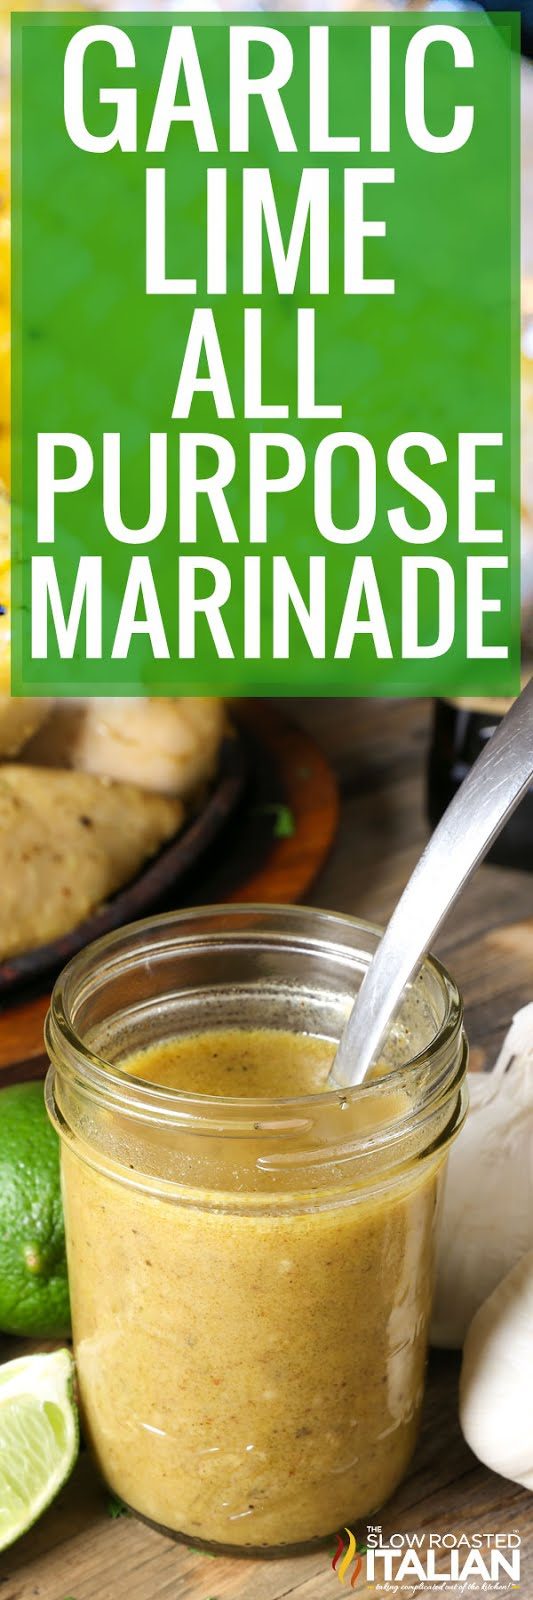 garlic-lime-all-purpose-marinade-pin-9620246